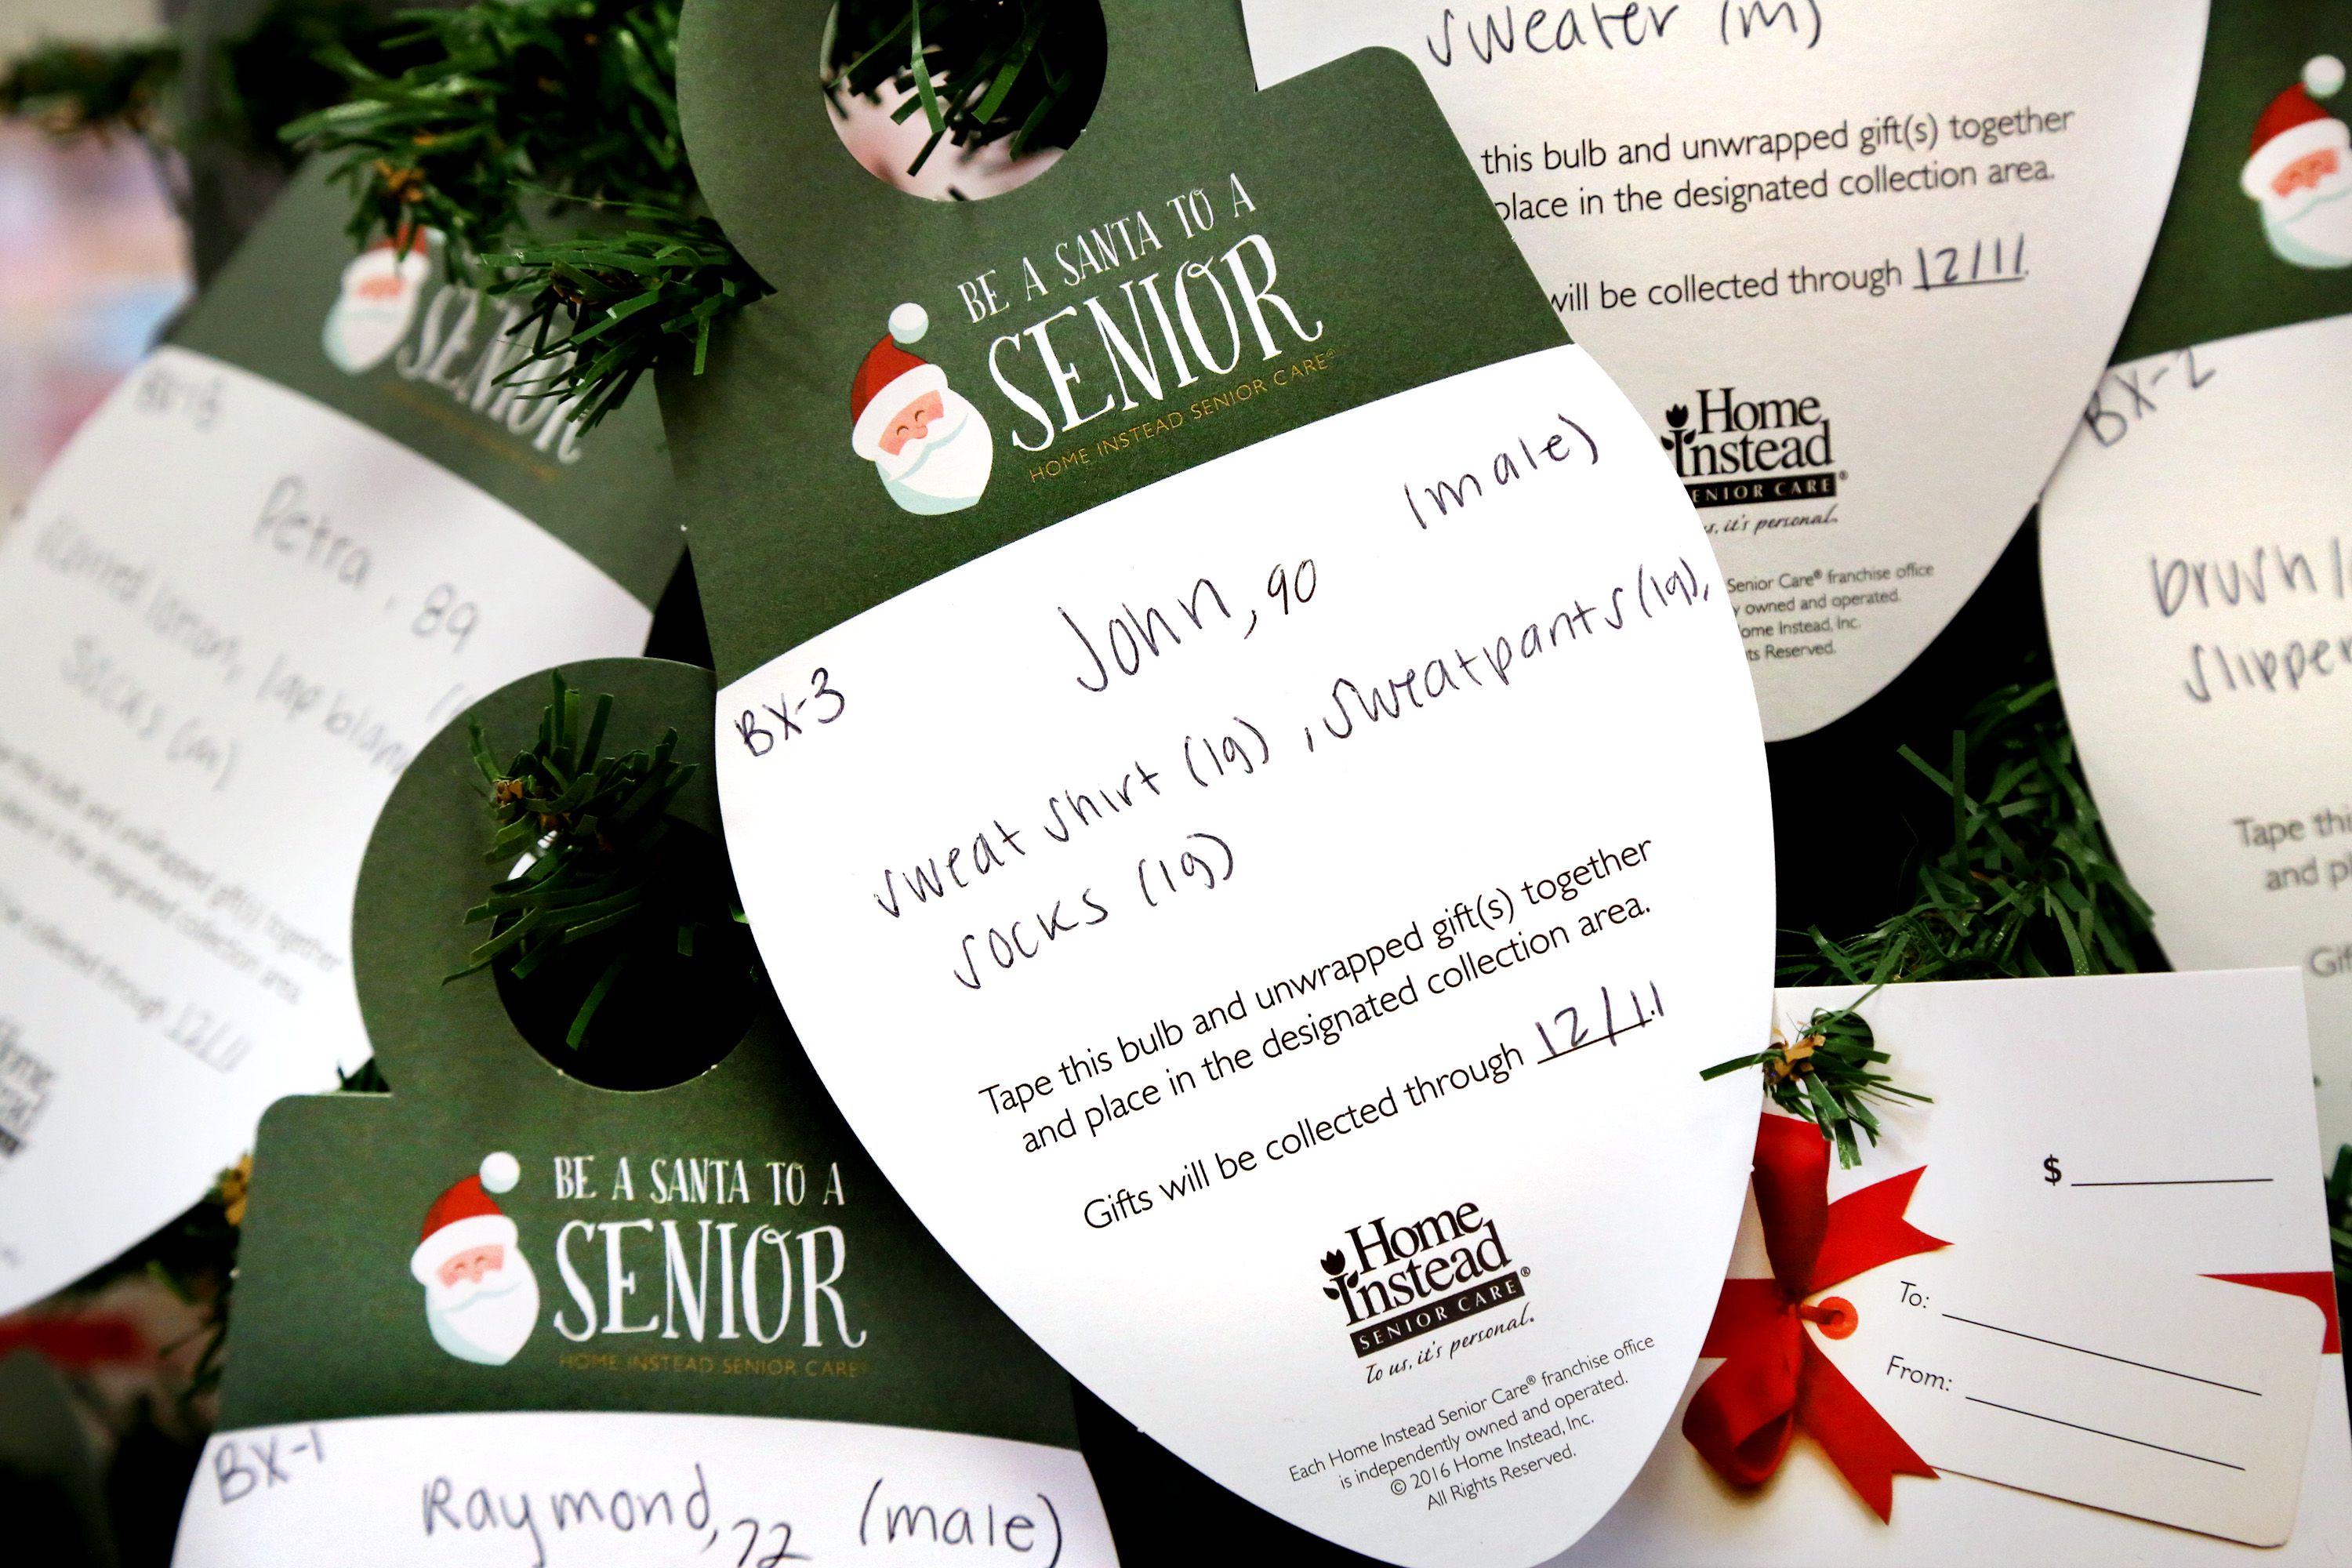 Donations for seniors due through Dec. 2 for Christmas